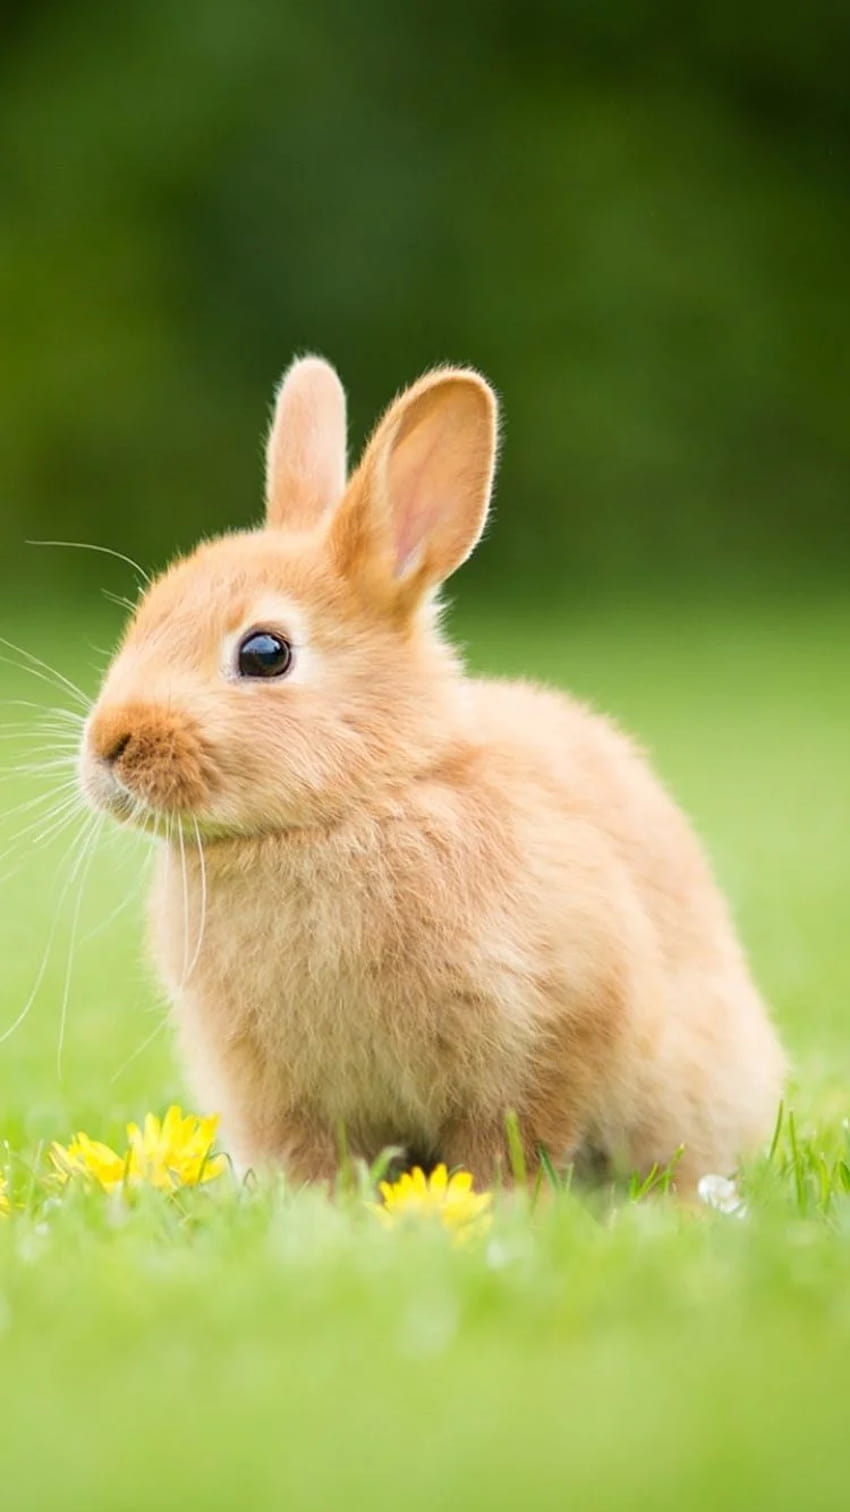 Animal/Conejo, móvil de conejo fondo de pantalla del teléfono